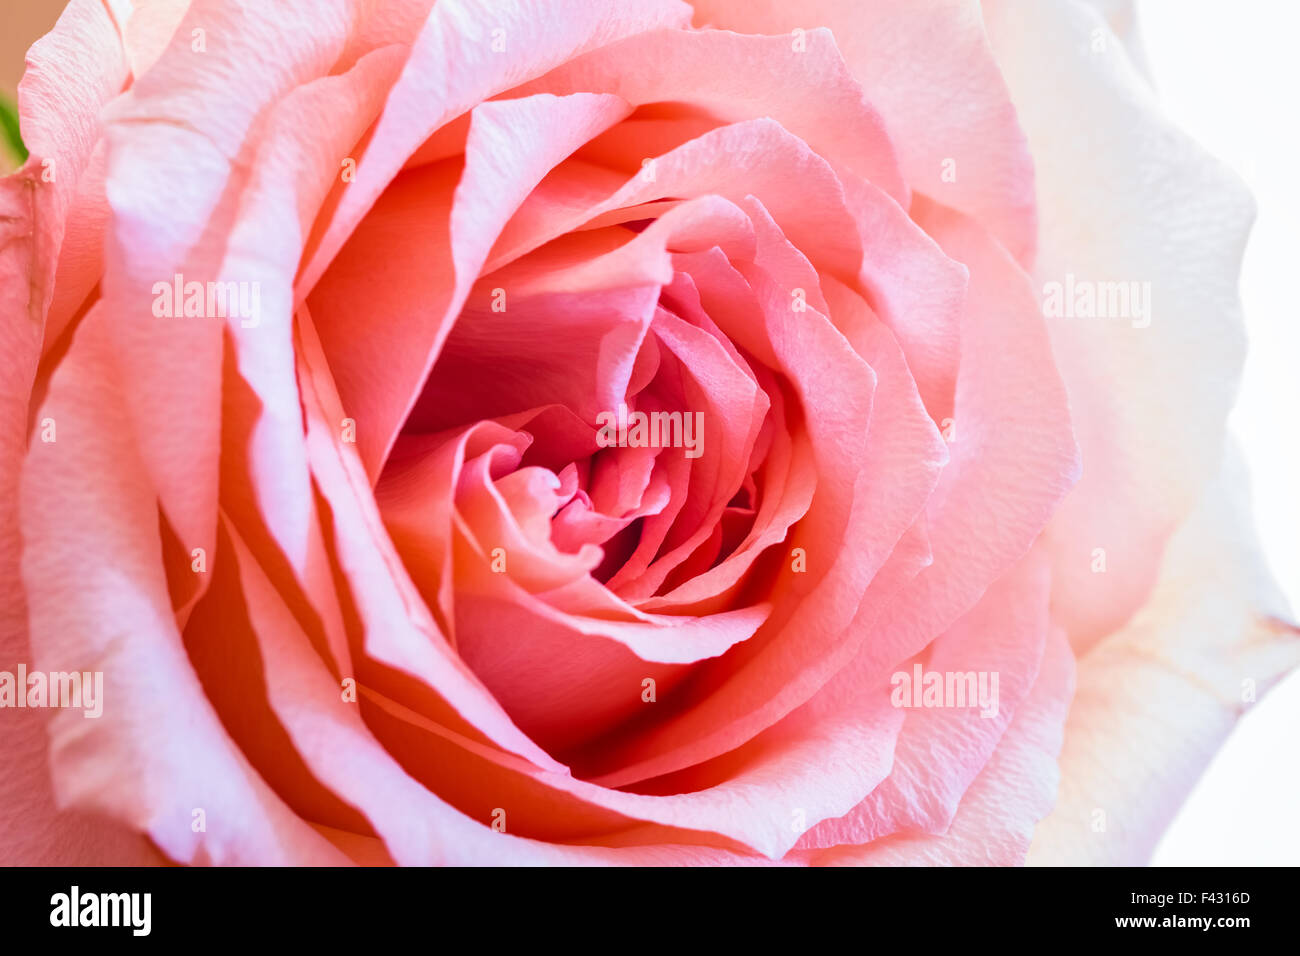 rose closeup Stock Photo